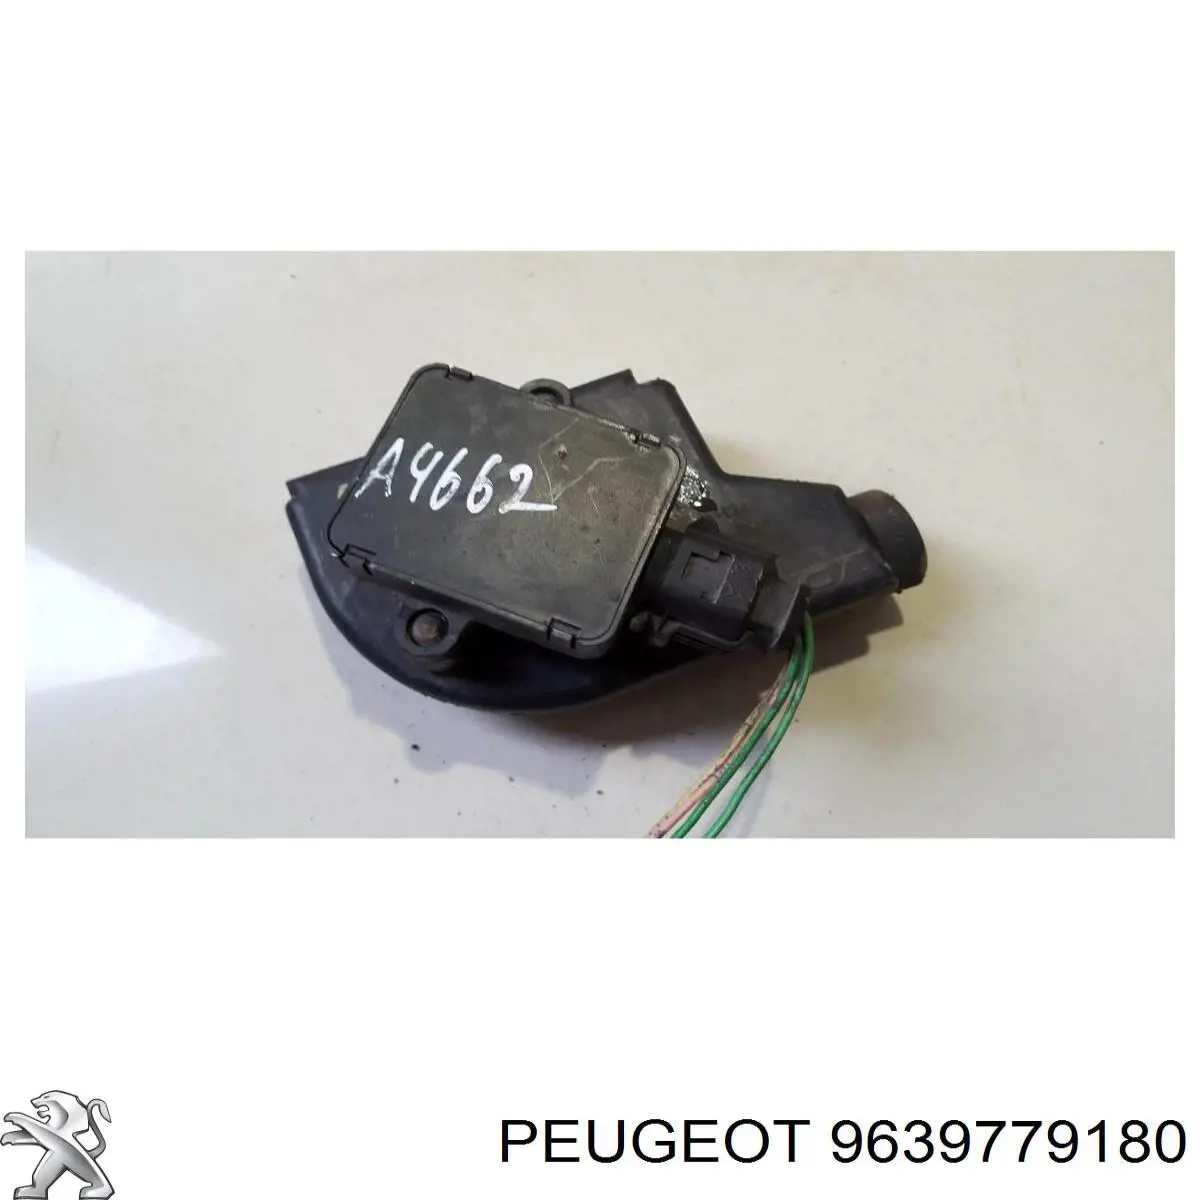 9639779180 Peugeot/Citroen датчик положения педали акселератора (газа)